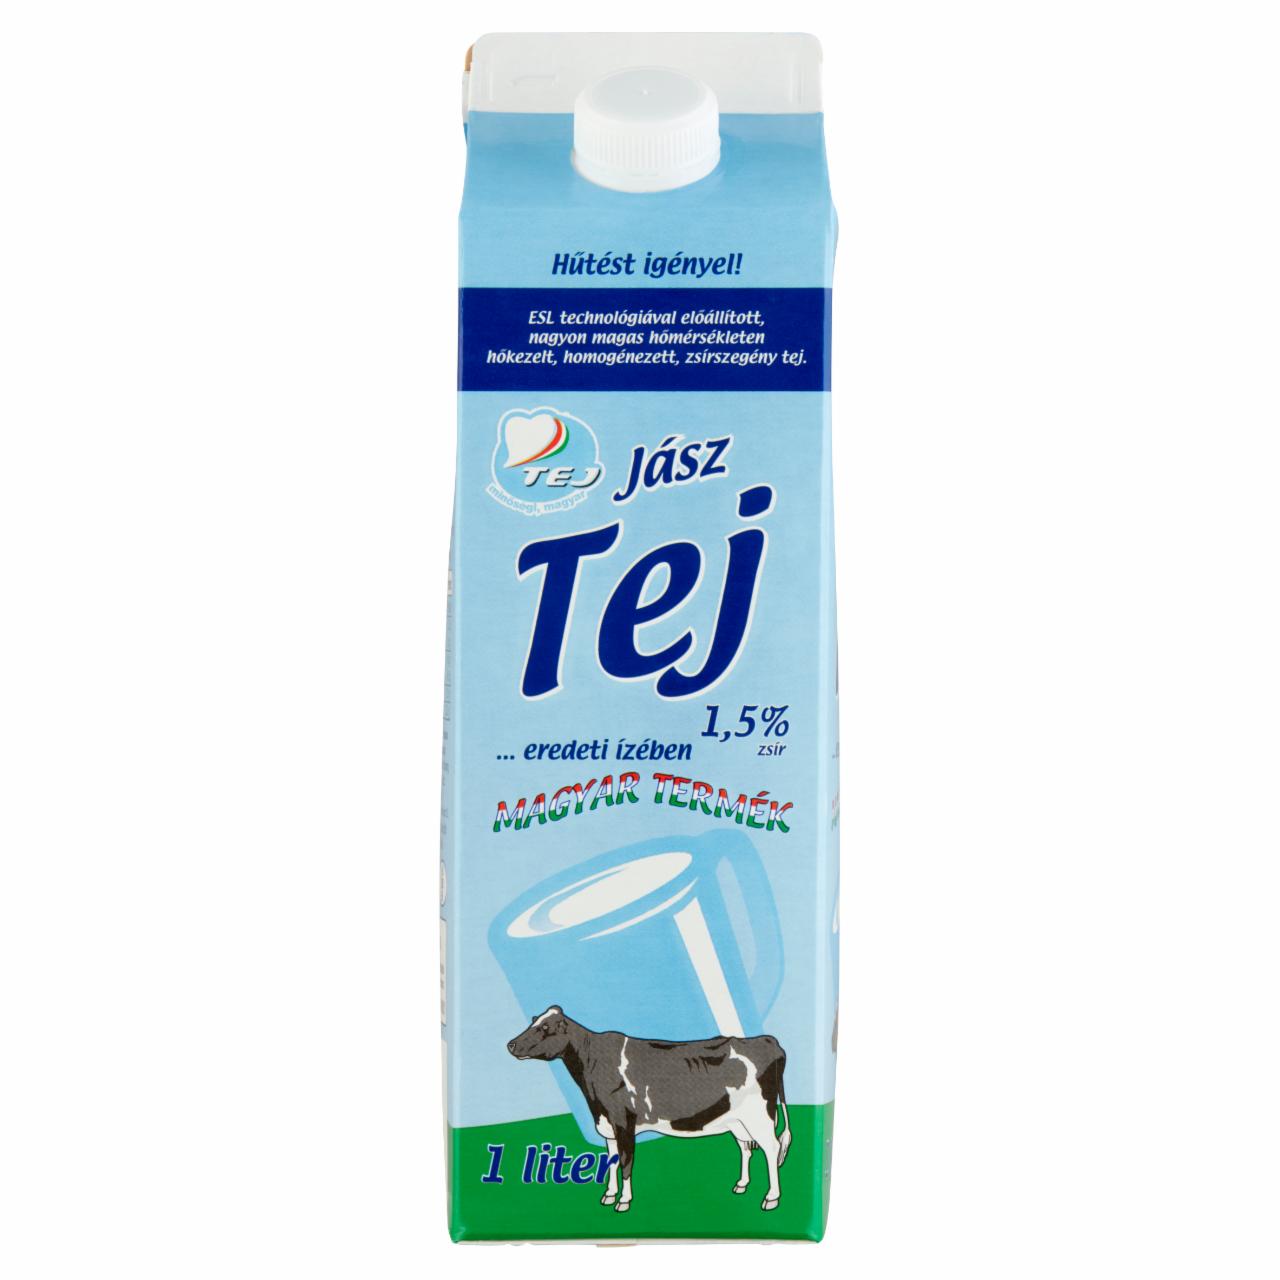 Képek - Jásztej ESL zsírszegény tej 1,5% 1 l